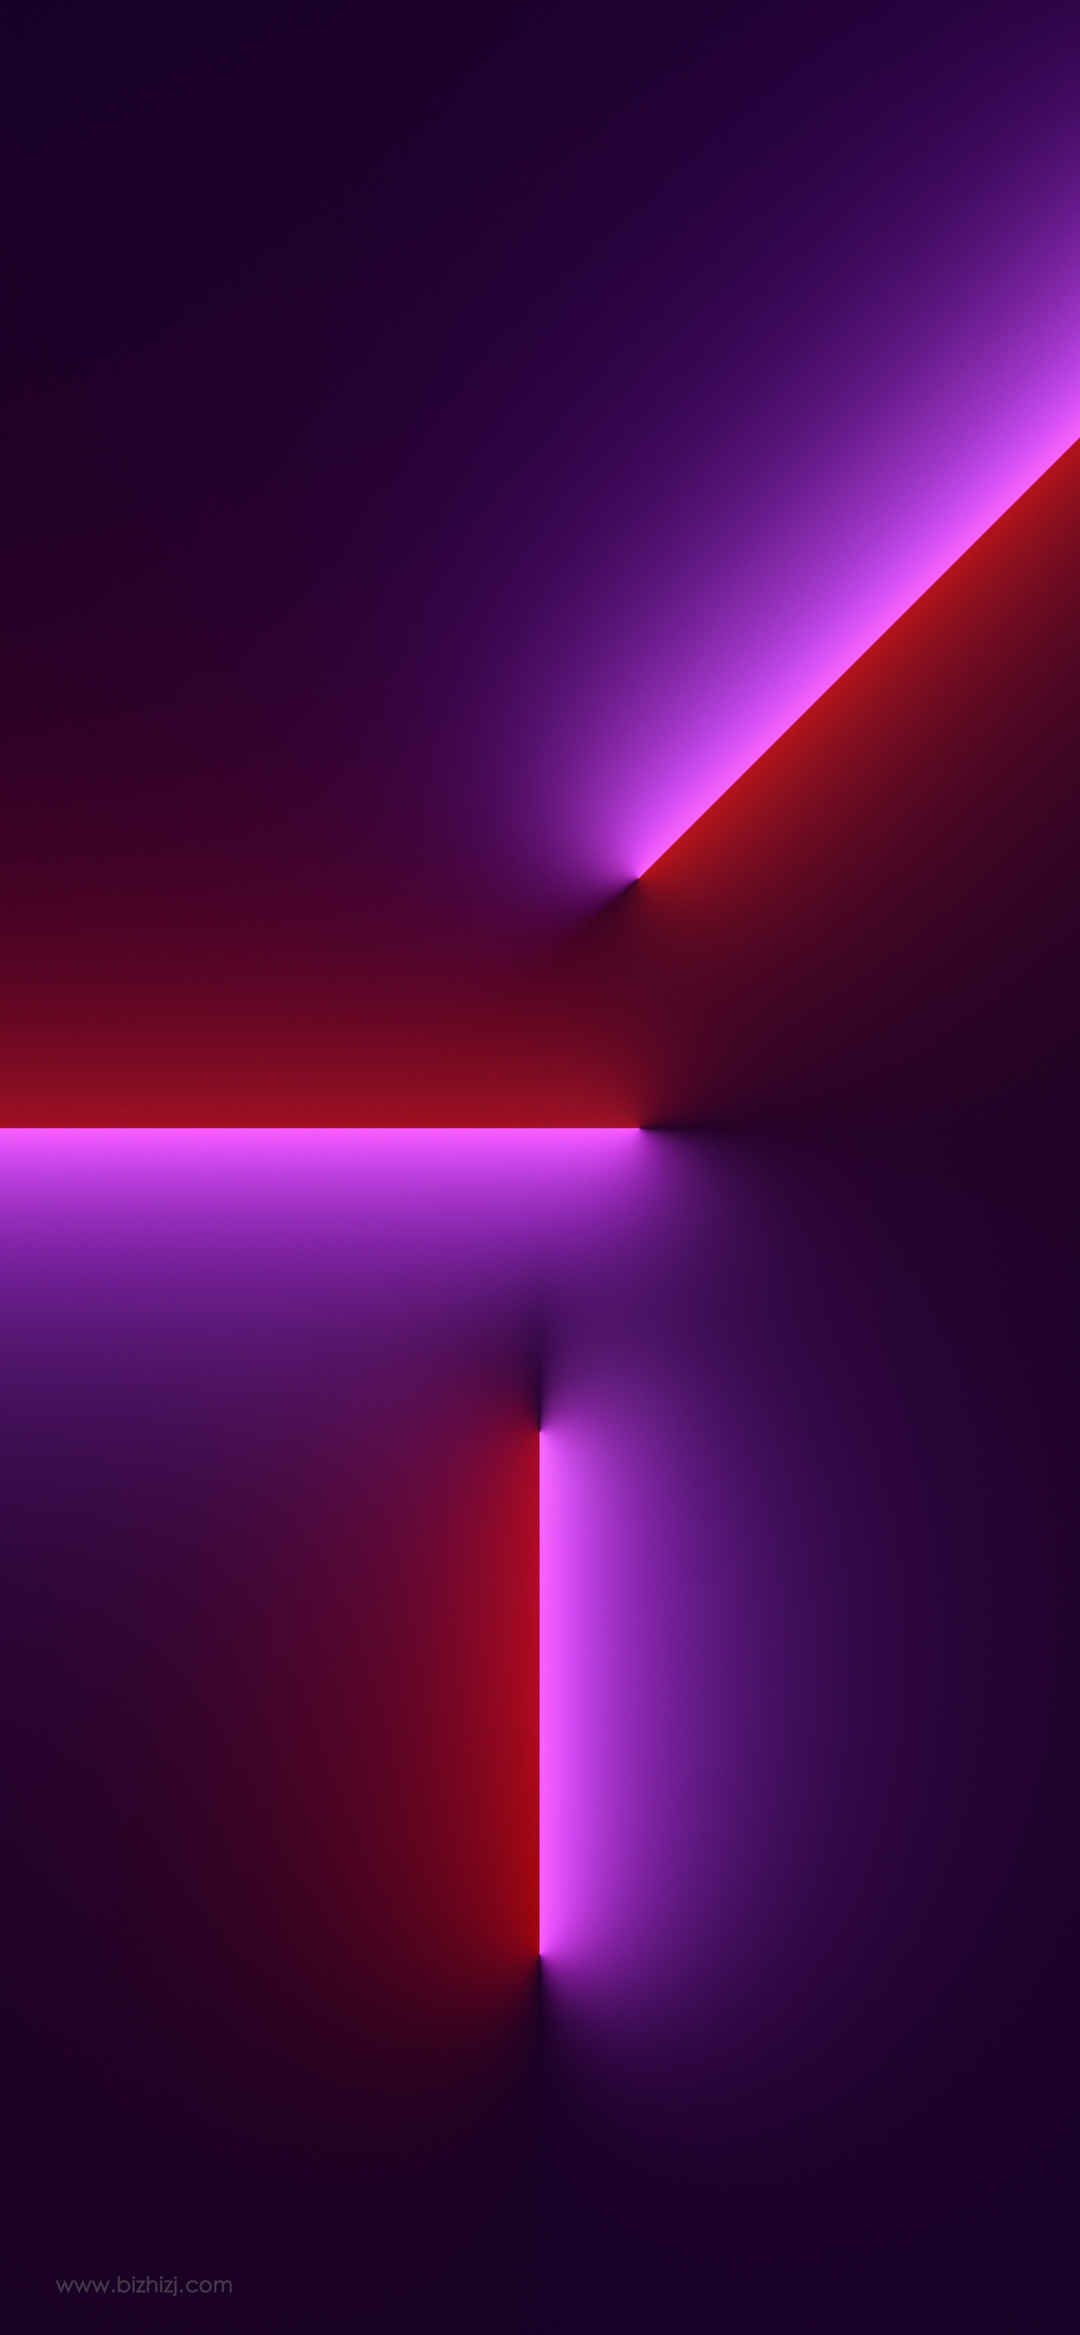 苹果iPhone13Pro 官方原图手机壁纸 个性设计 红紫色1542x3334-